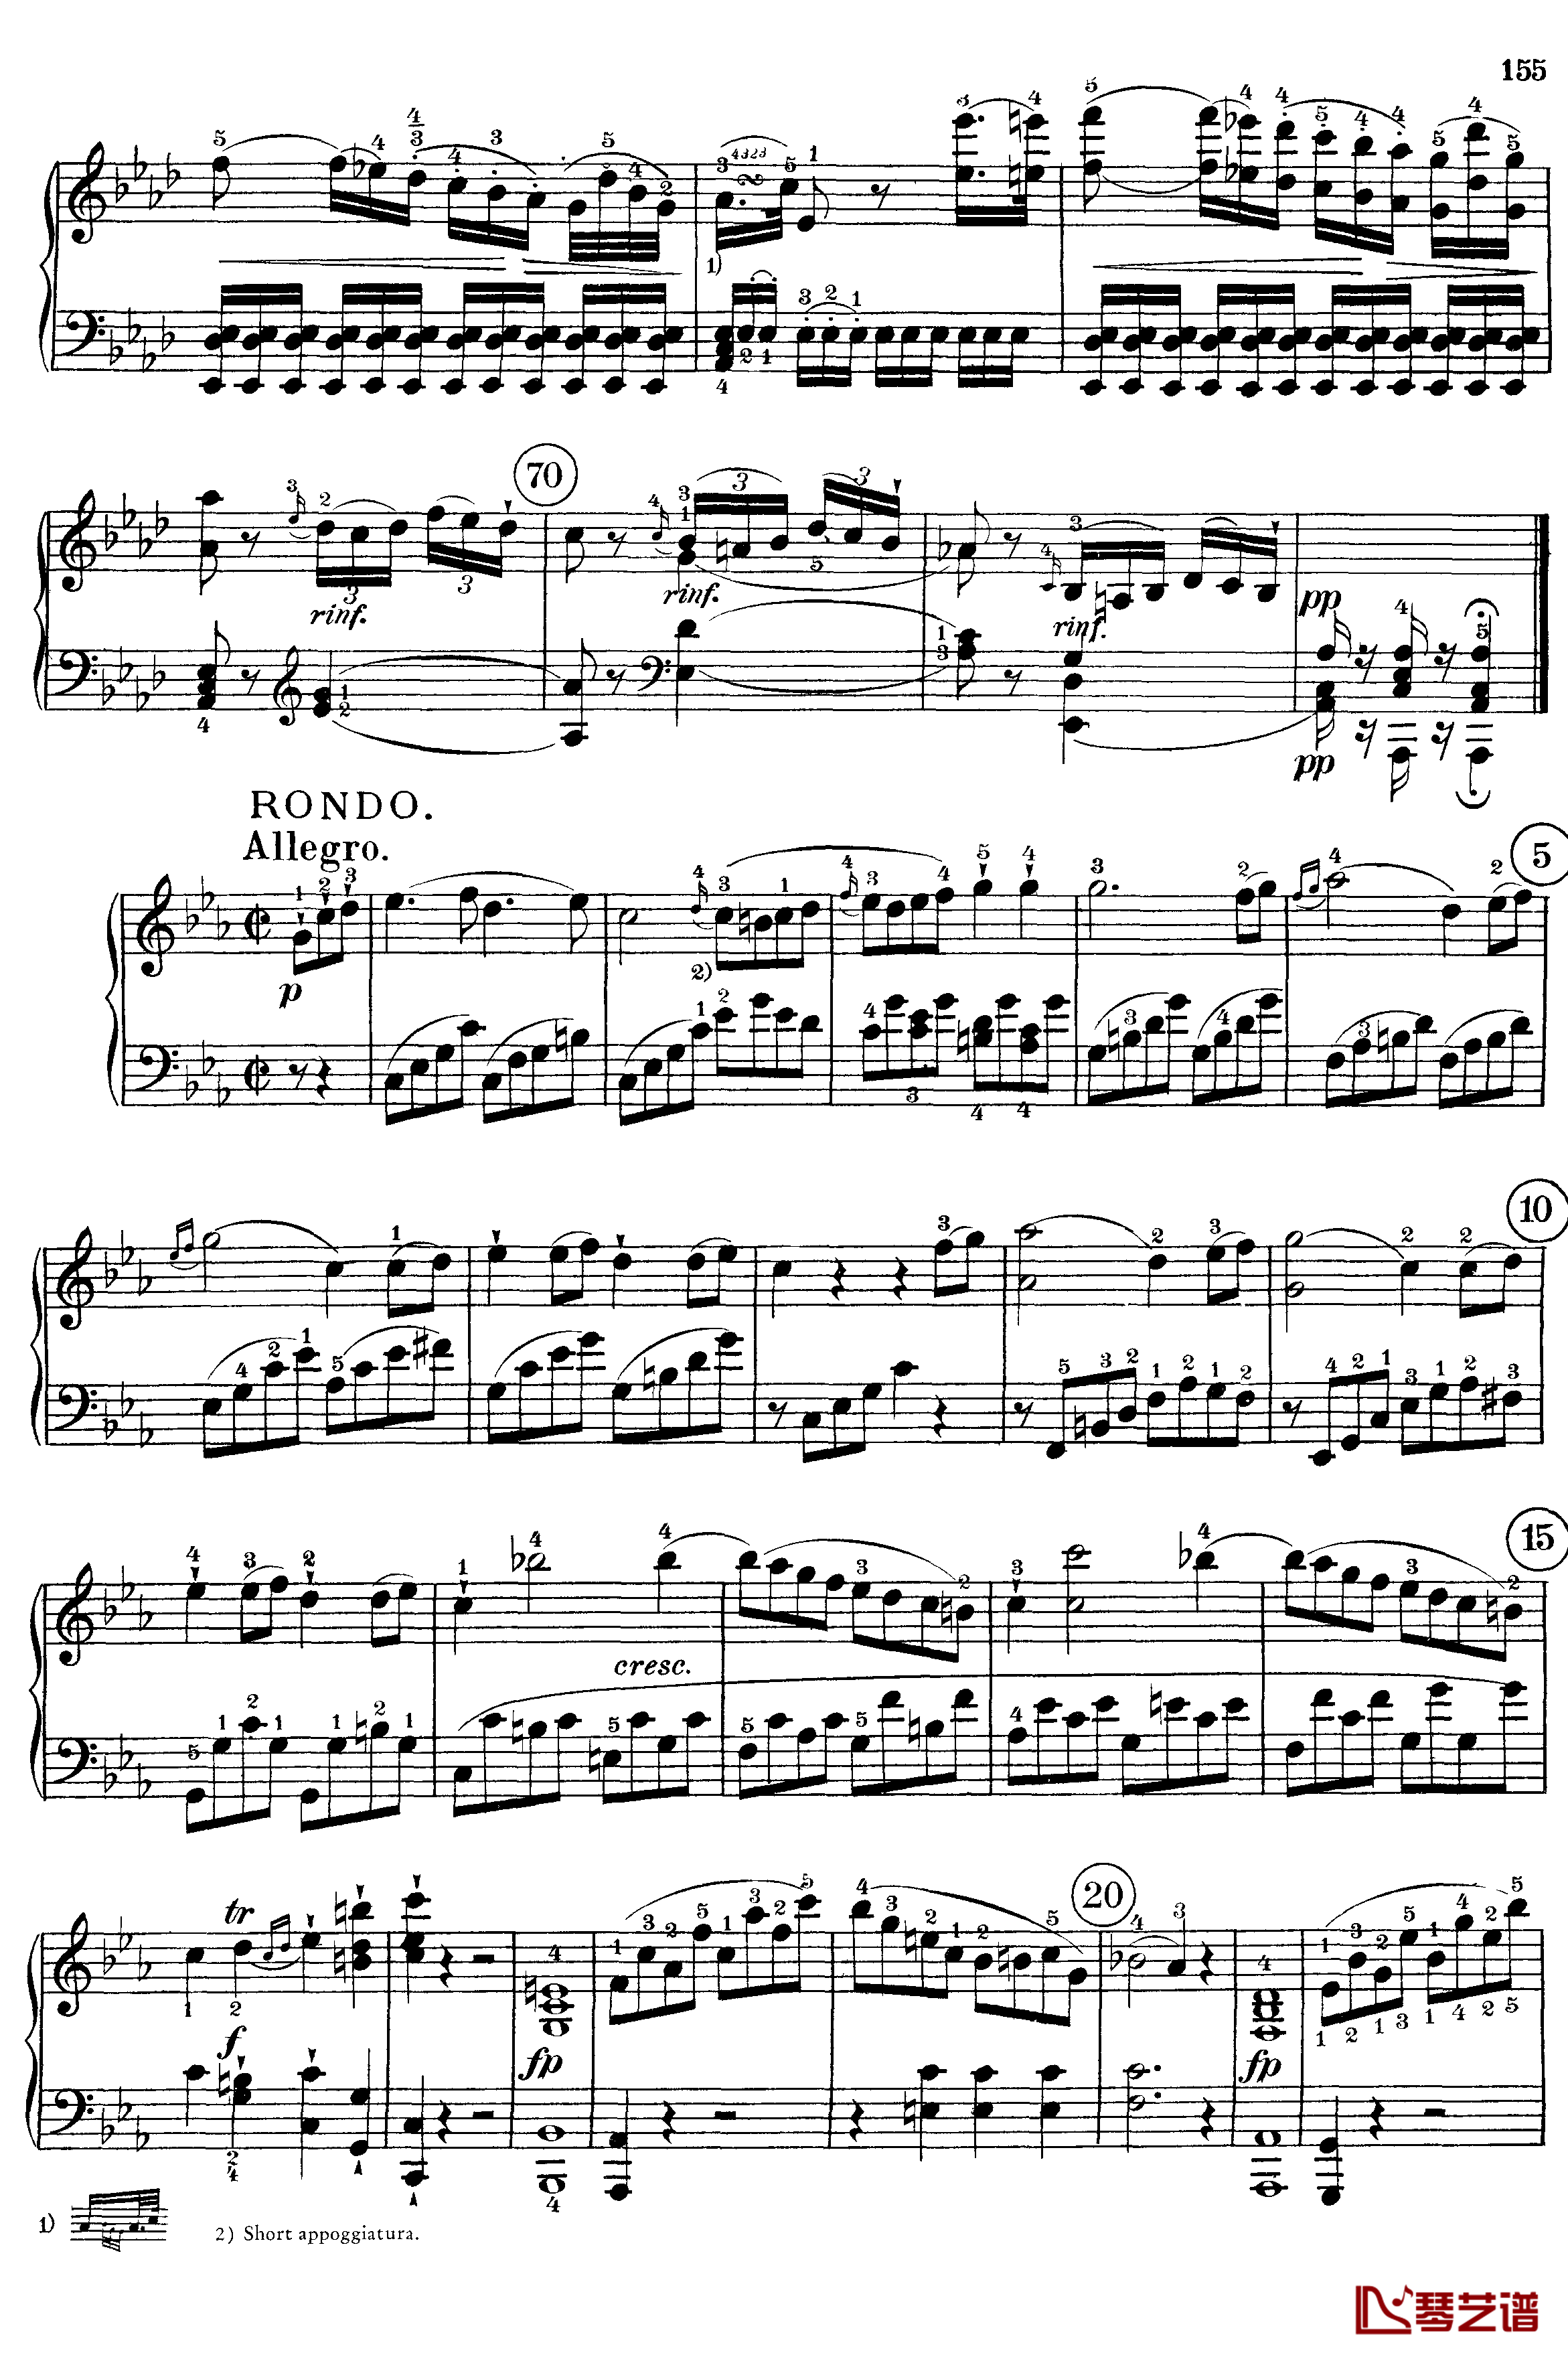 悲怆钢琴谱-c小调第八号钢琴奏鸣曲-全乐章-带指法版-贝多芬-beethoven13